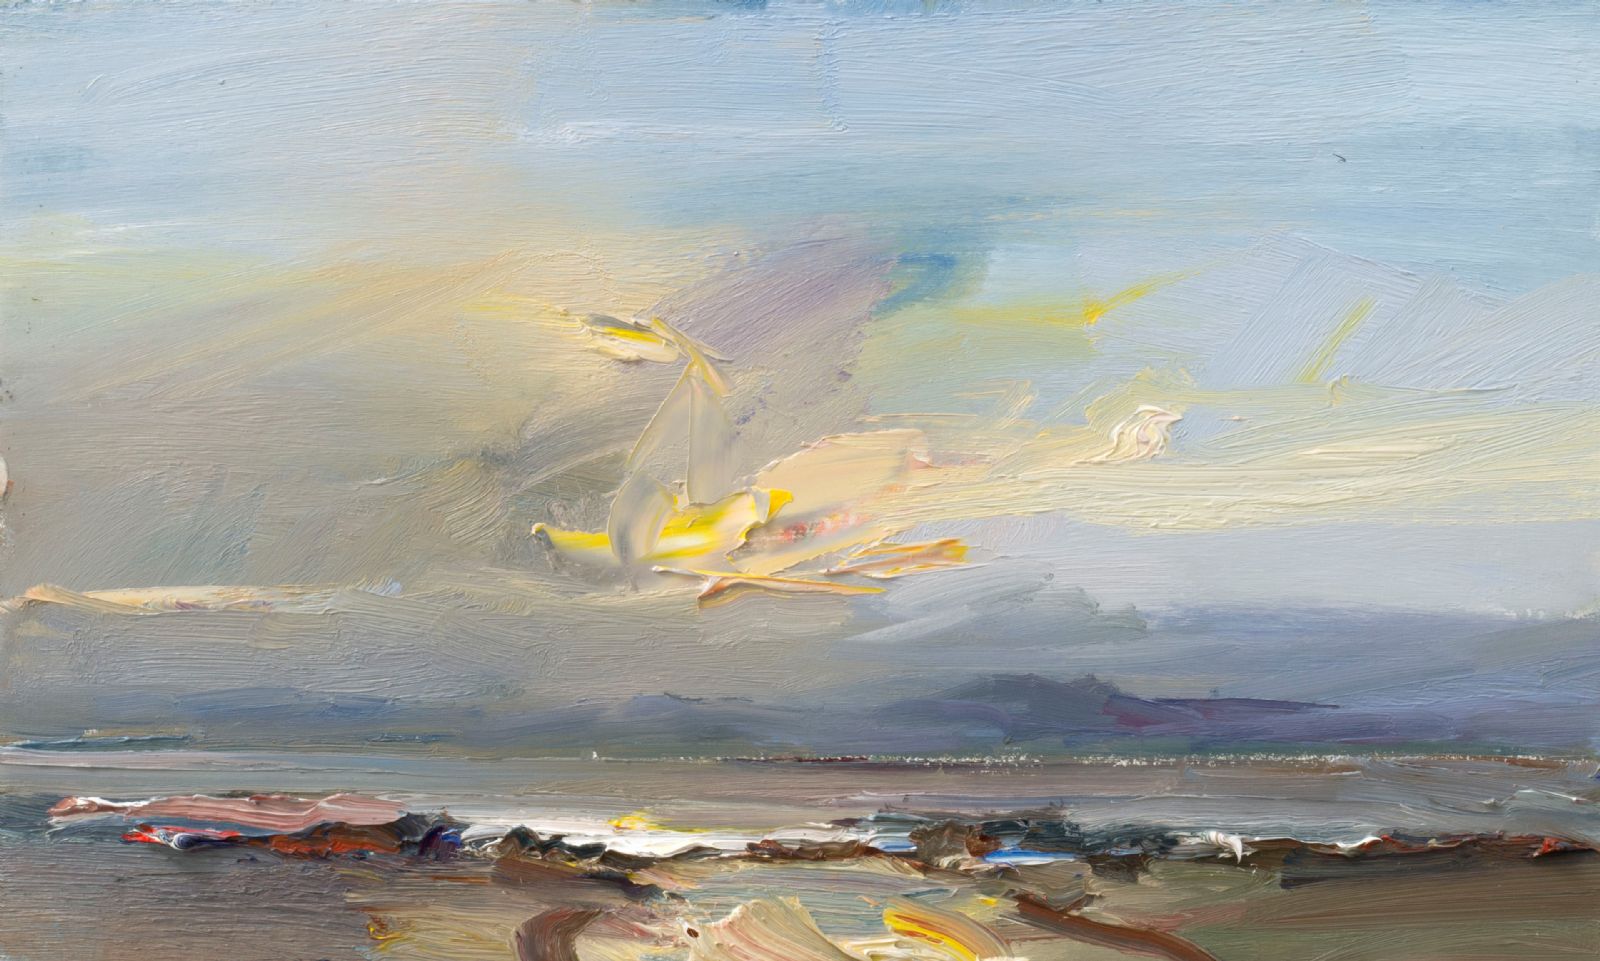 David Atkins - Looking Towards Islay at Sunset